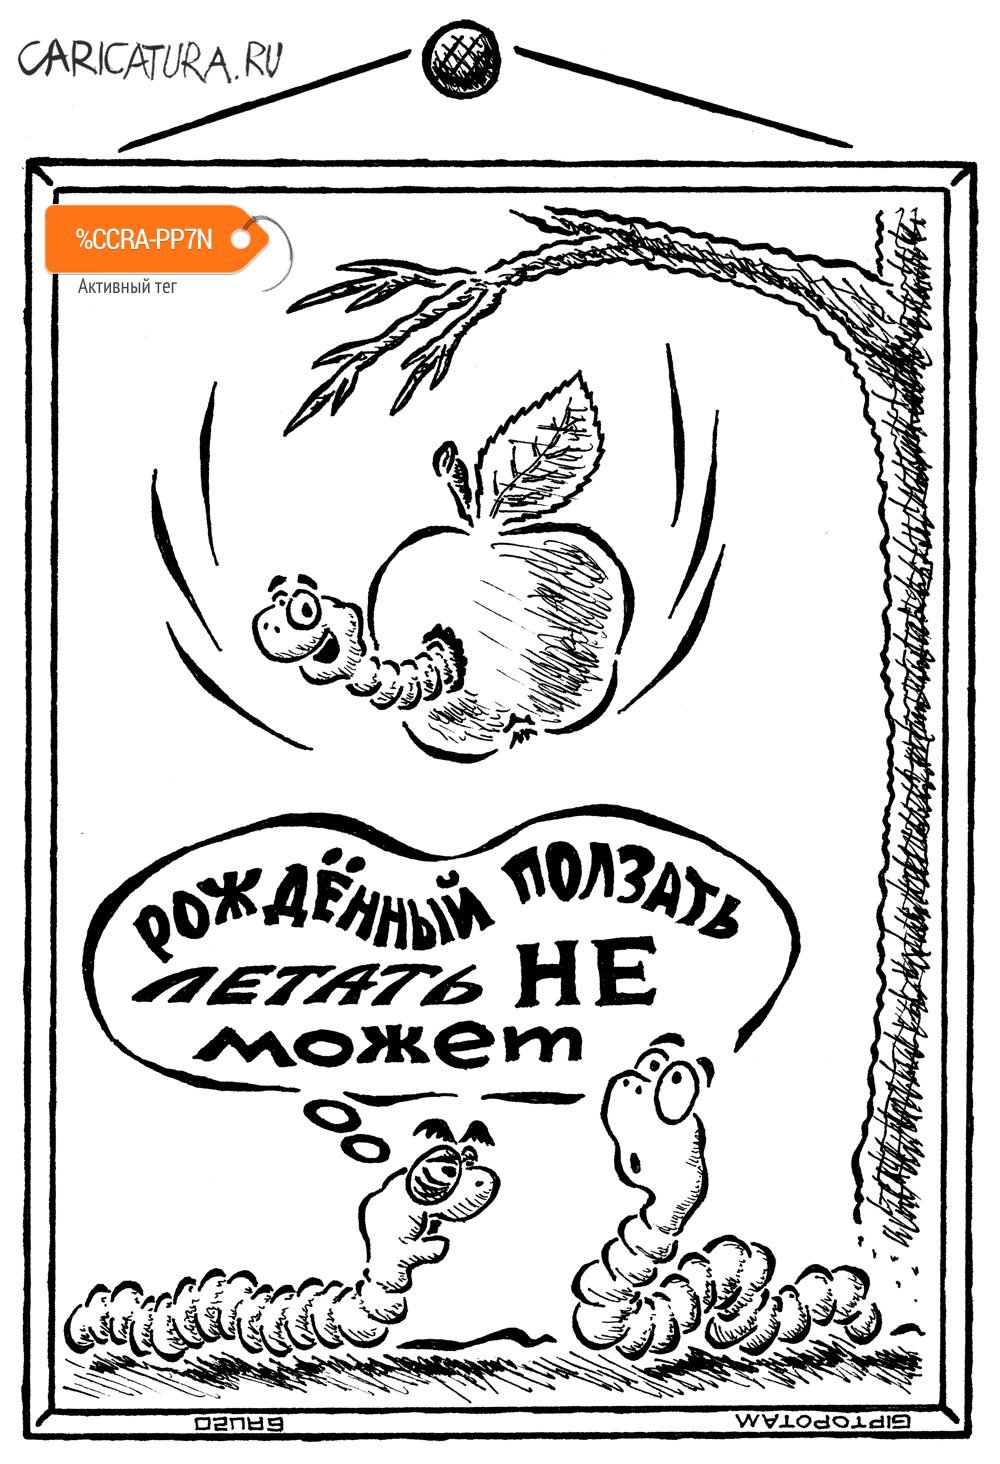 Карикатура "Мы рождены, чтоб сказку сделать бы...строй", Александр Евангелистов